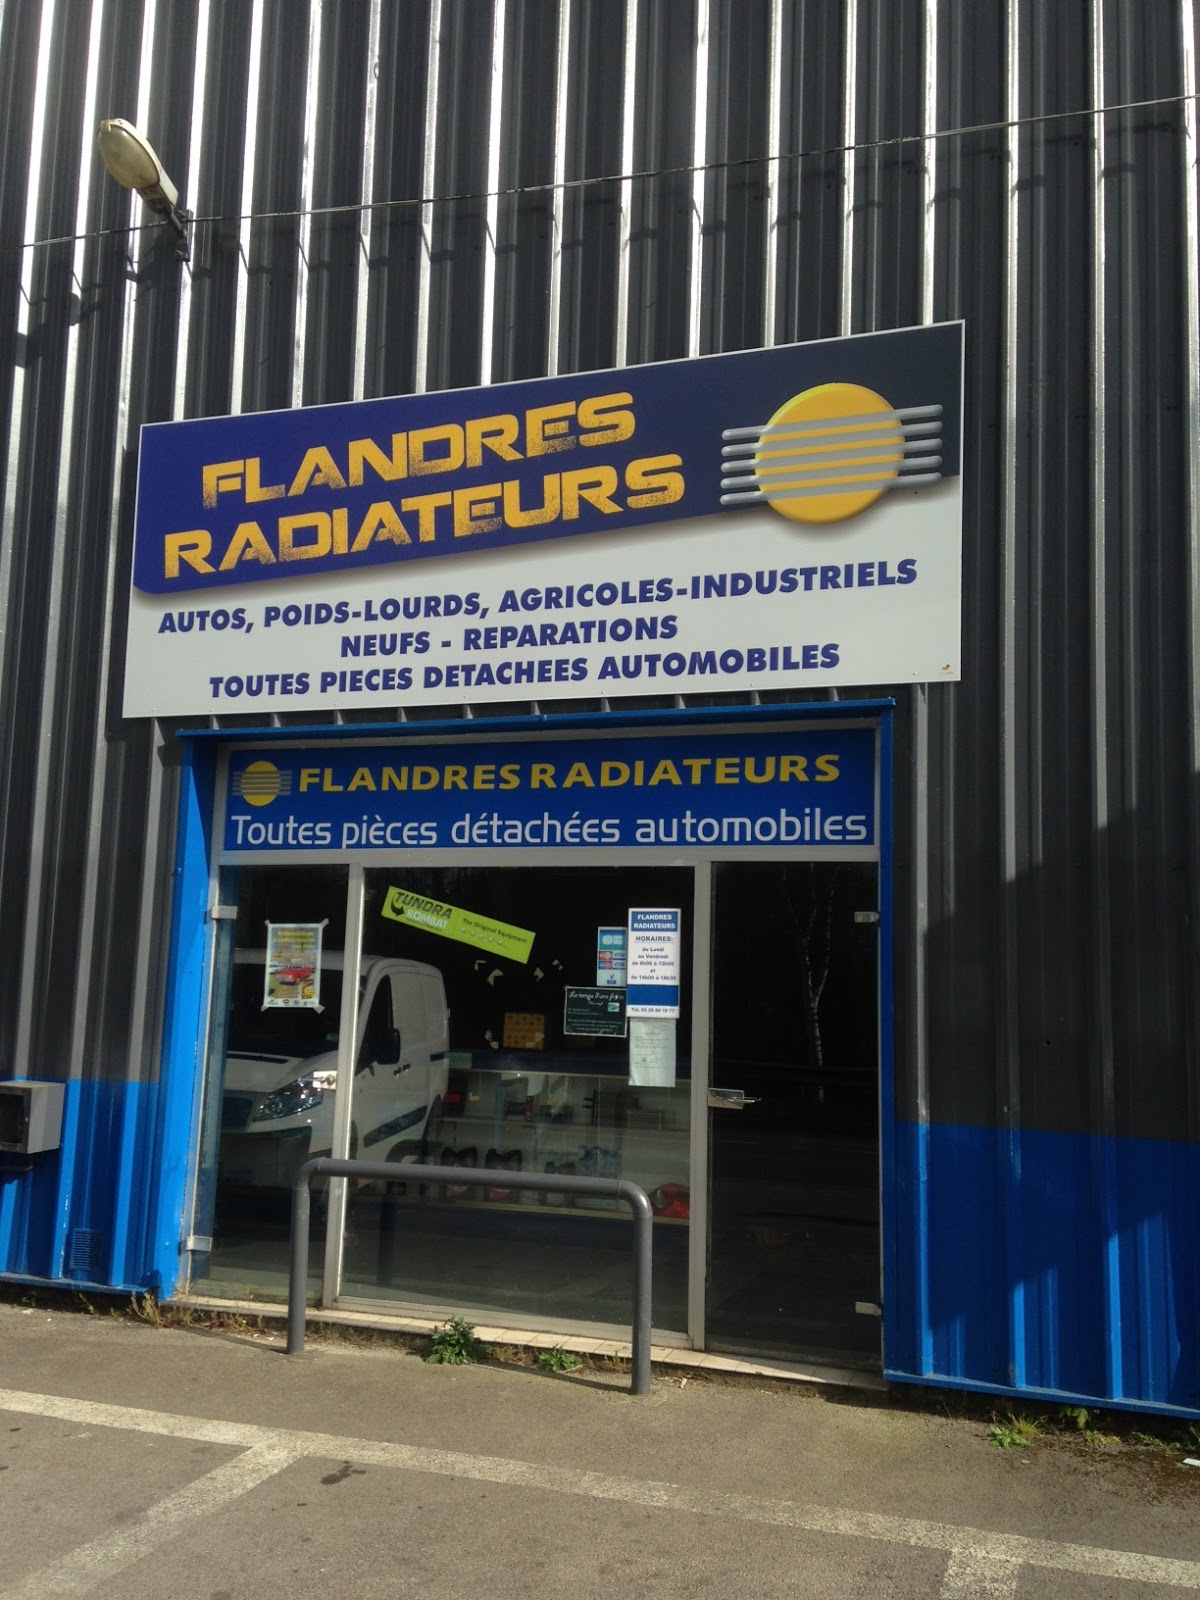 Flandres Radiateurs